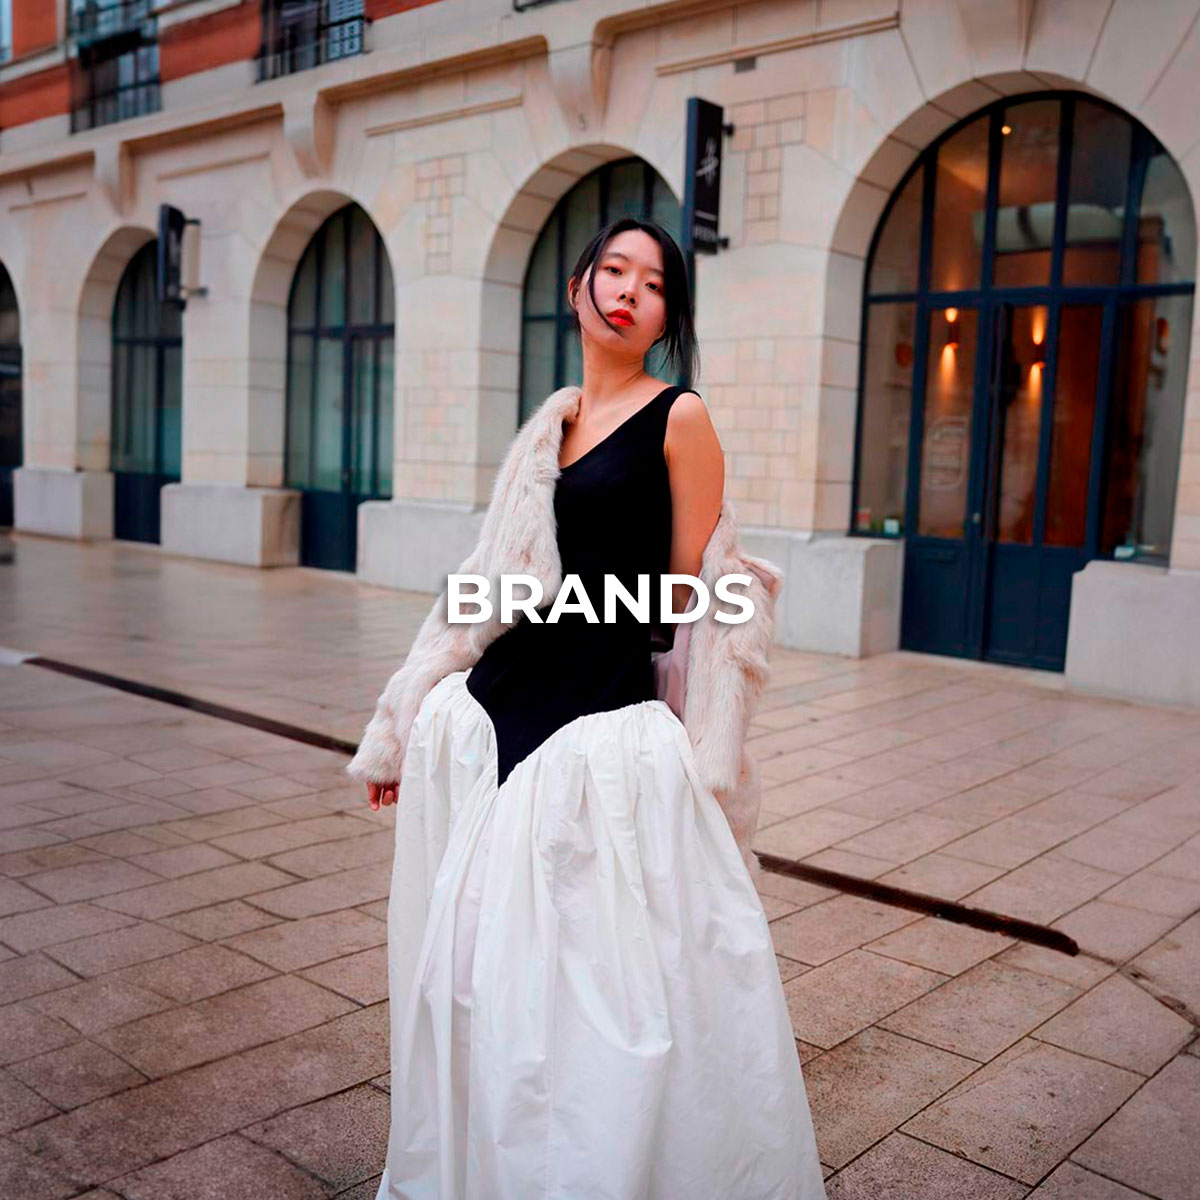 Brands-06